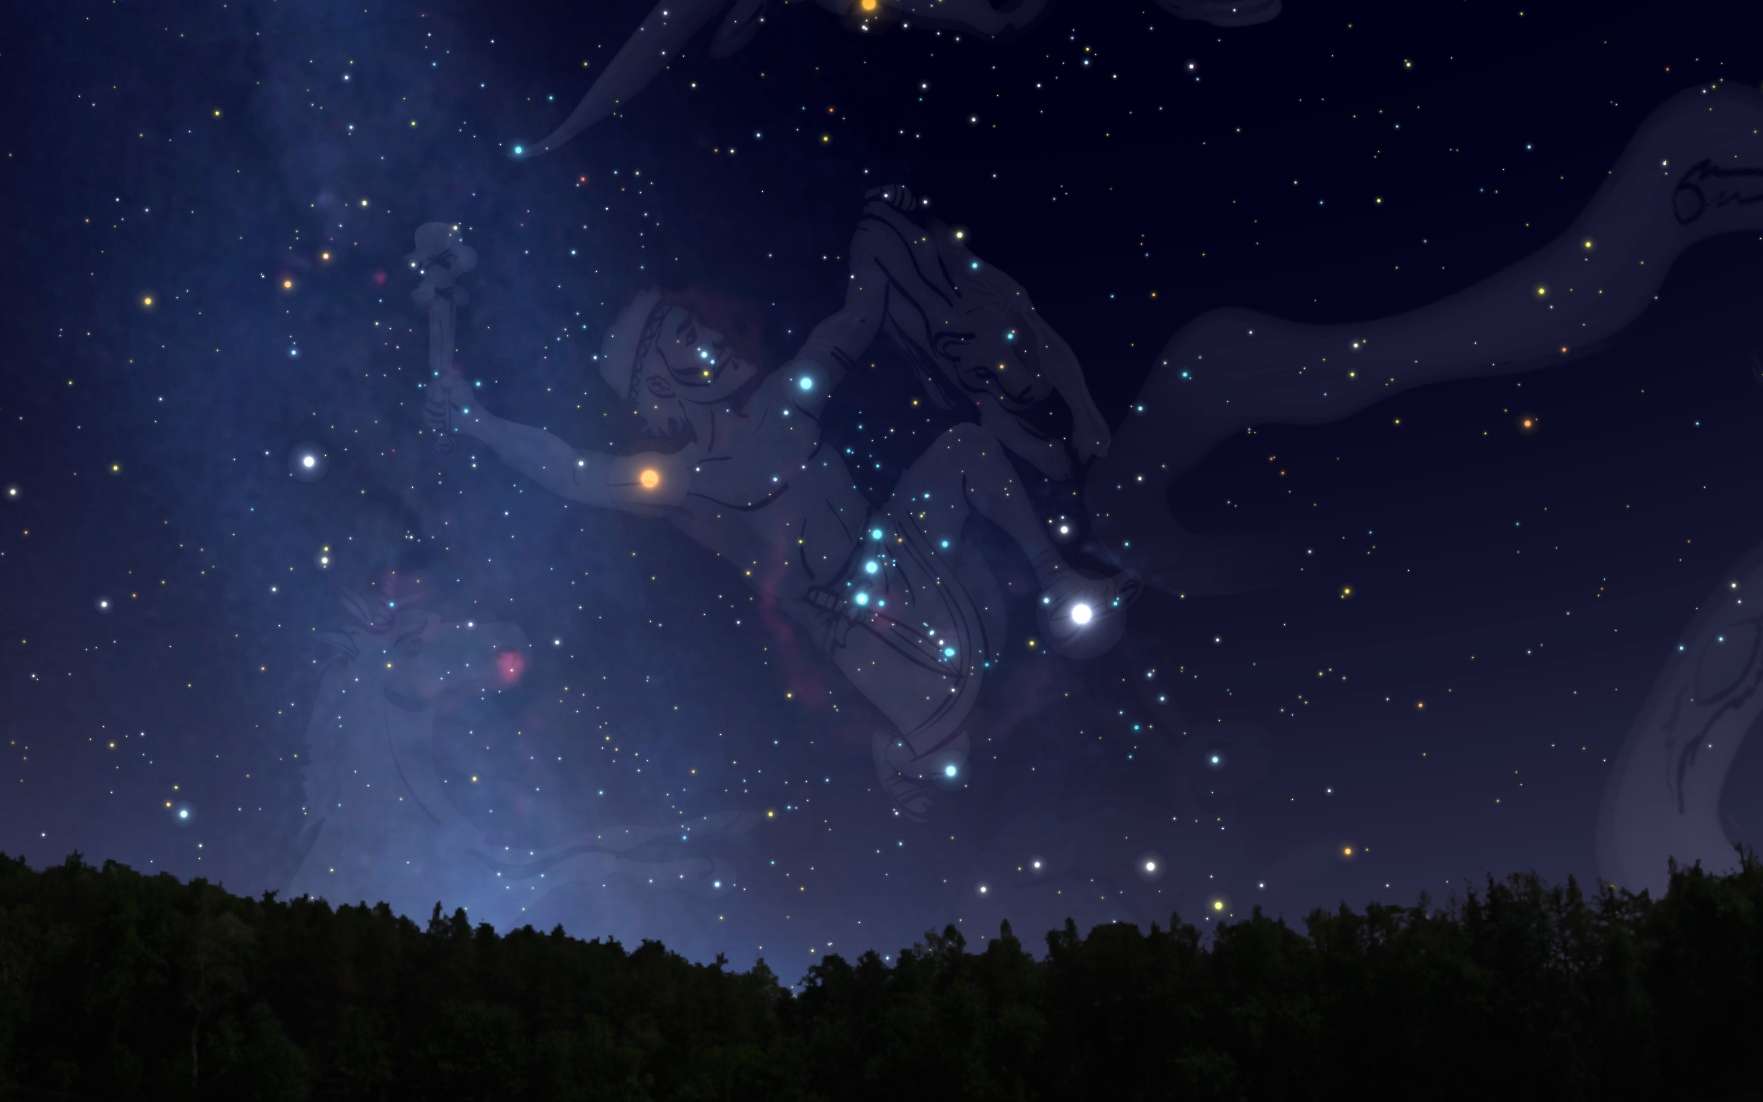 Une nouvelle comète Atlas à observer dans Orion ce week-end près de Bellatrix